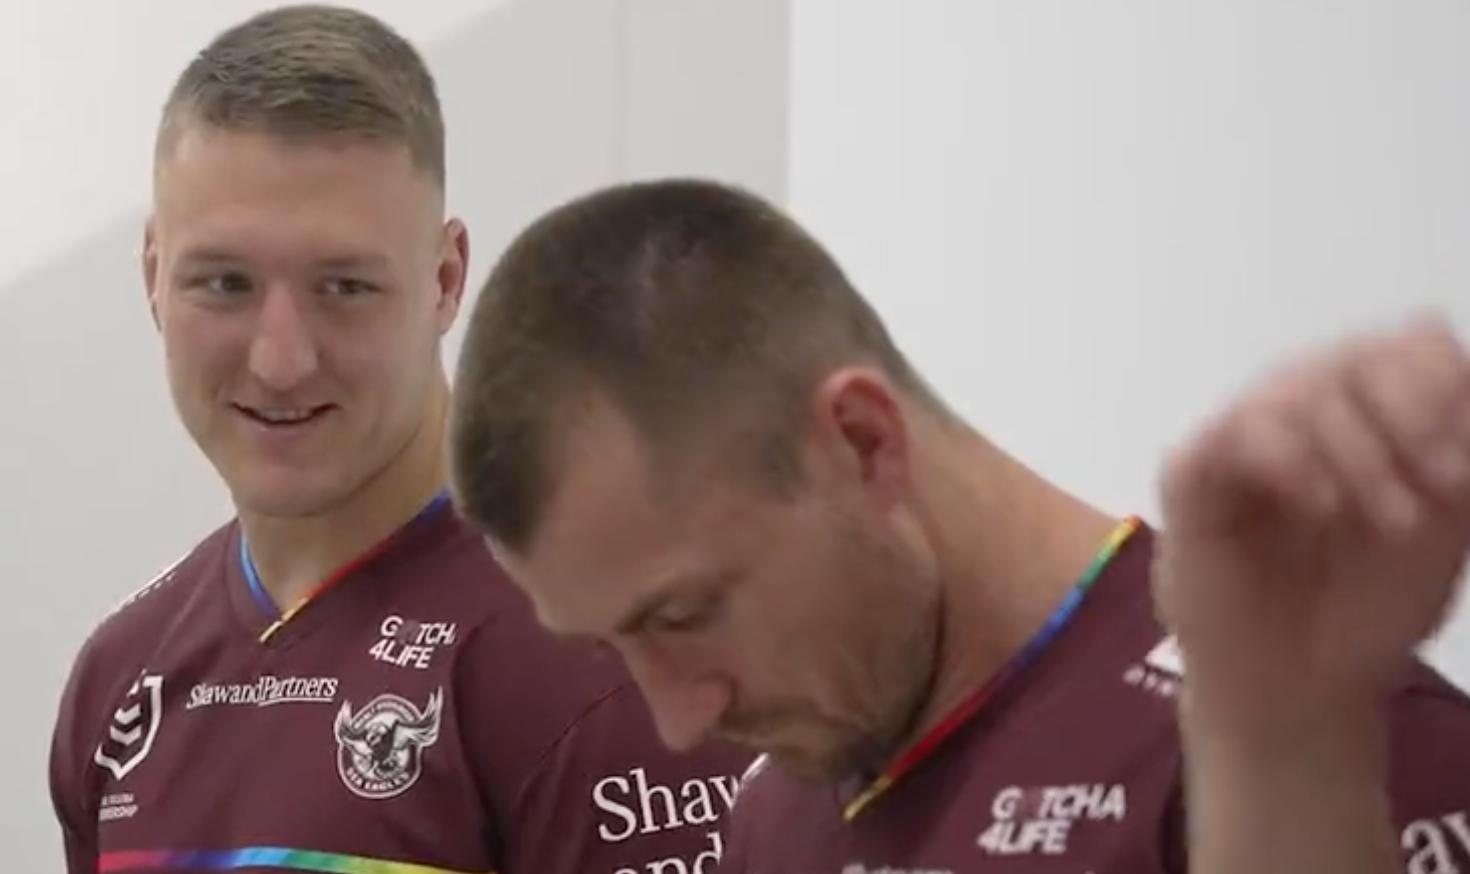 Un equipo de rugby australiano se viste del Orgullo y sale muy mal